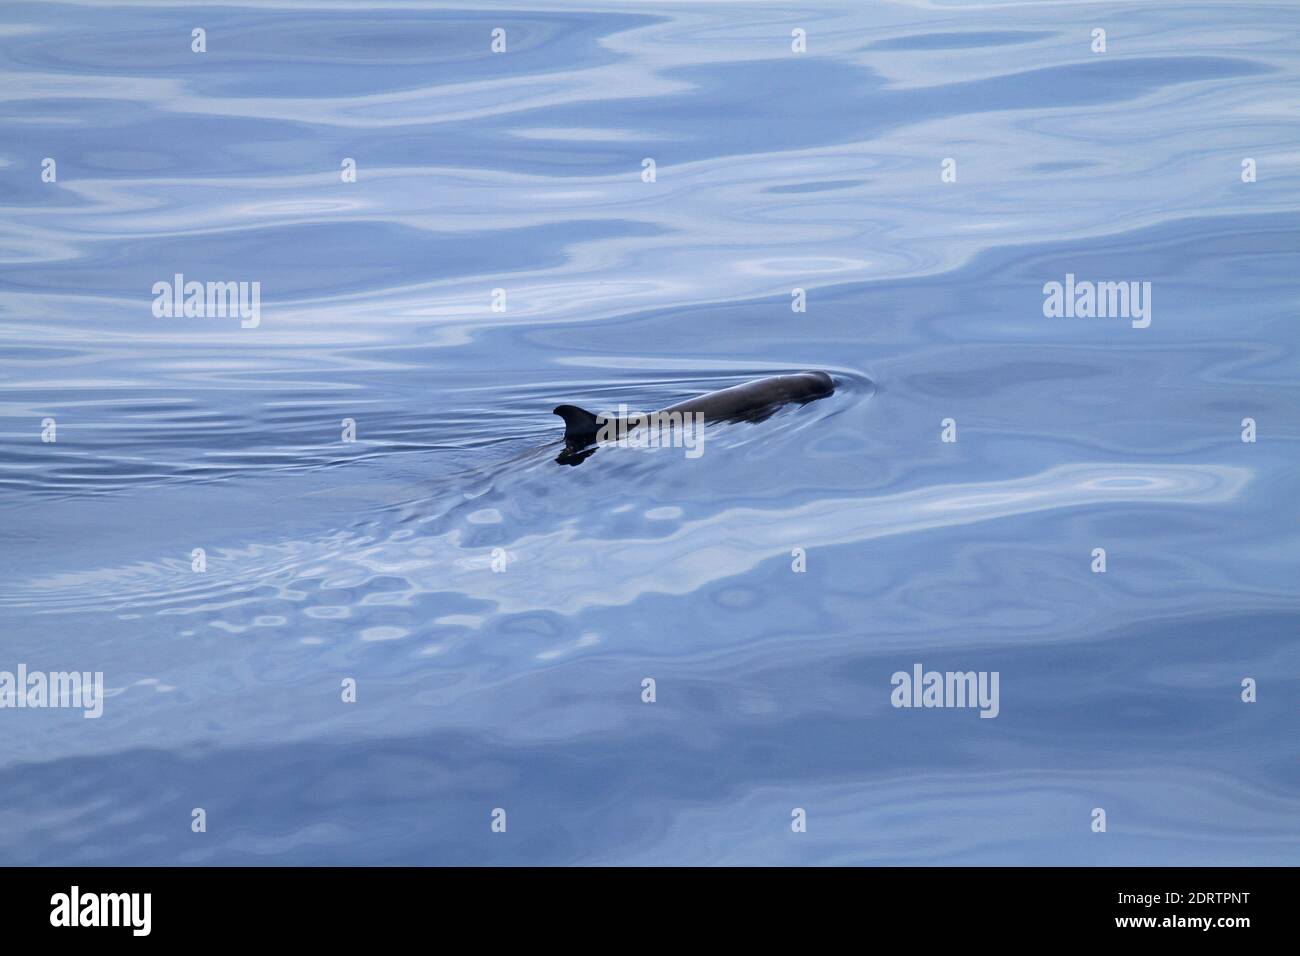 Dwarf Sperm Whale, Kogia sima Stock Photo